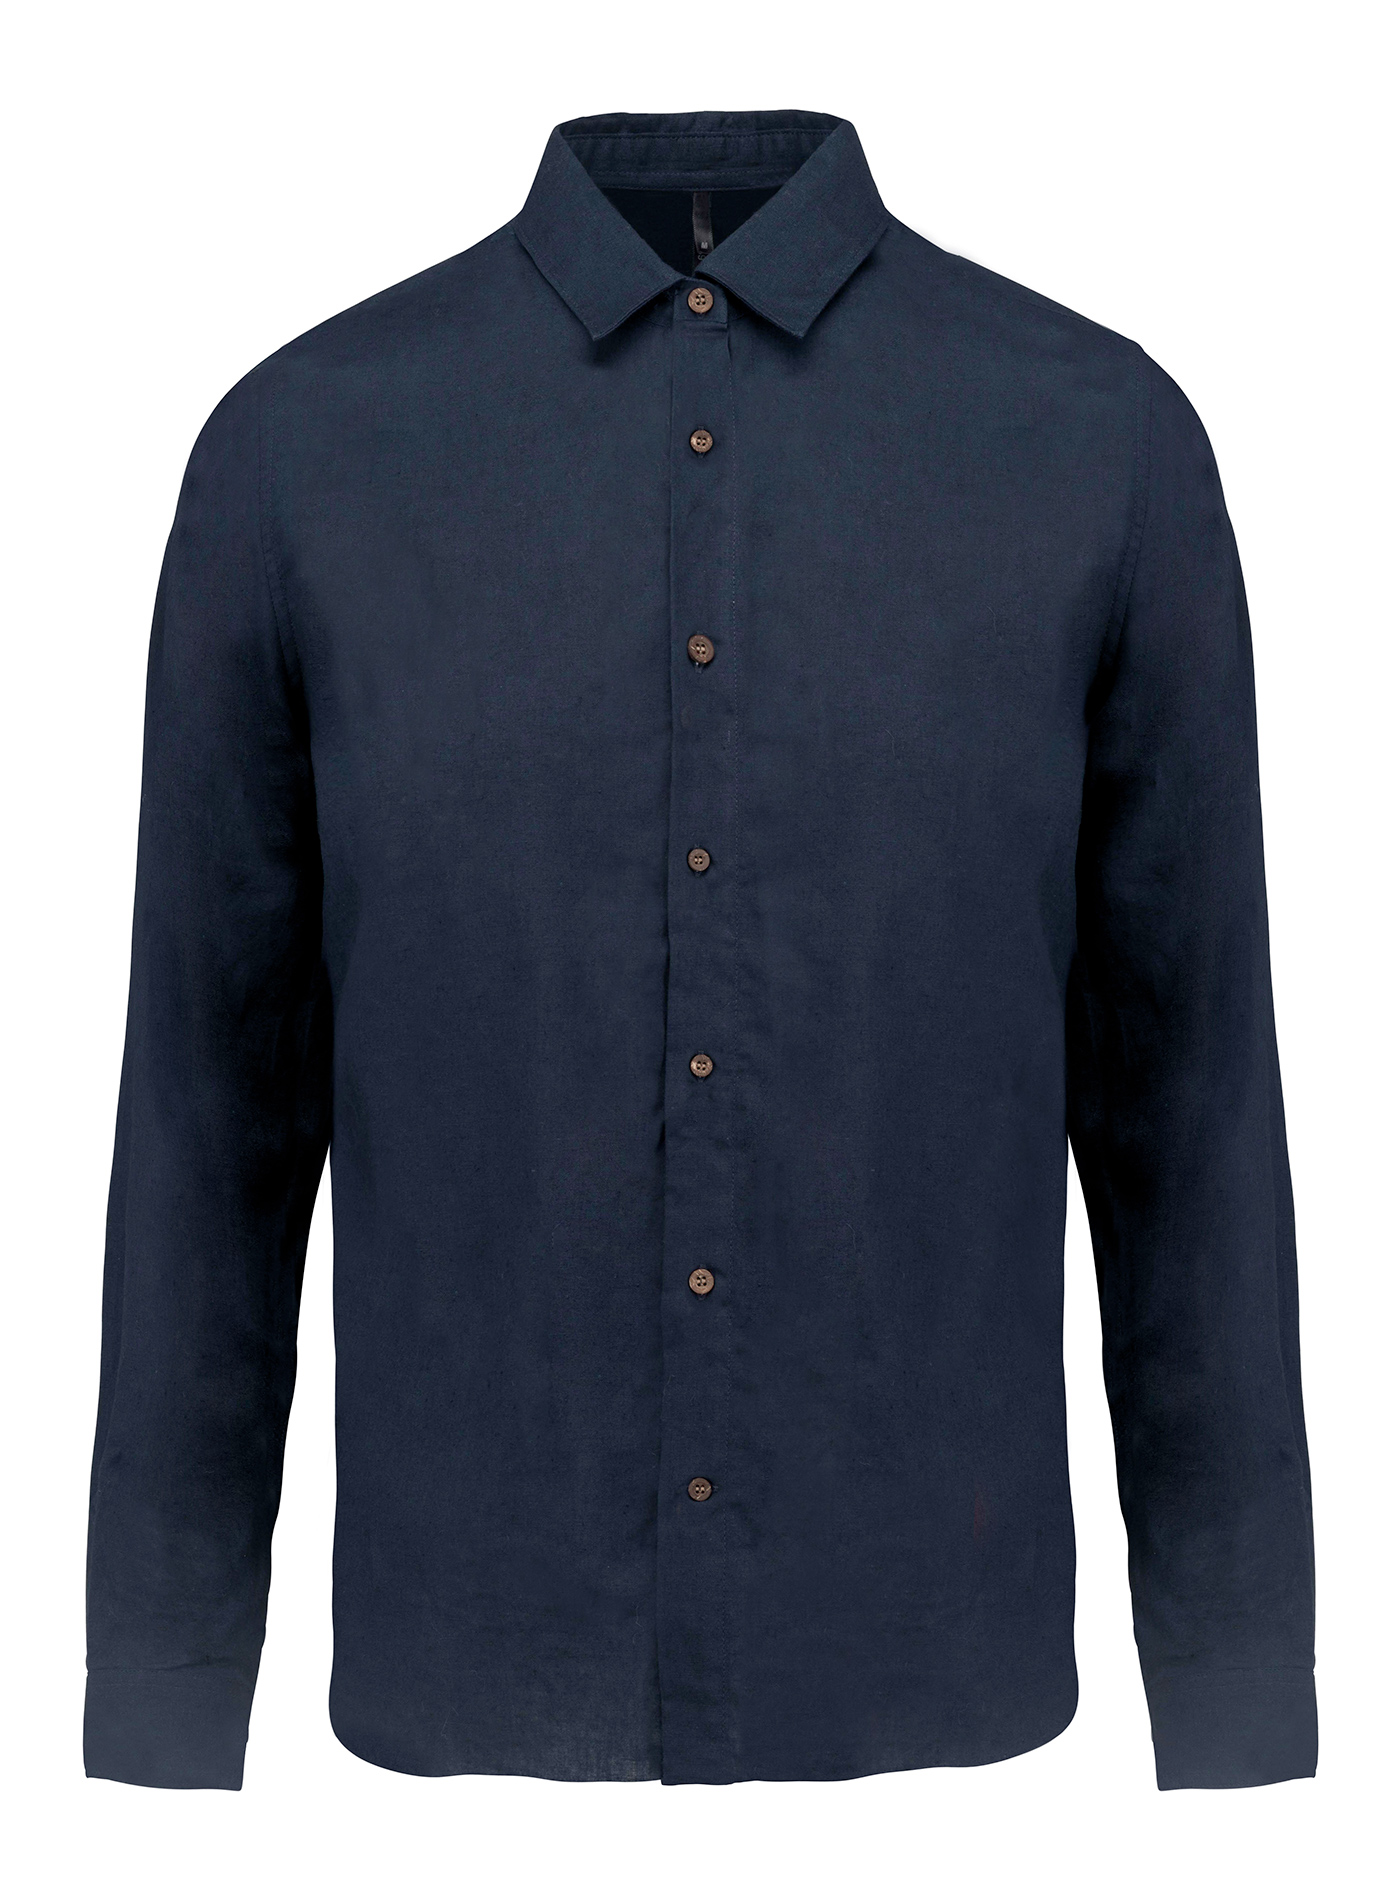 Pánská lněná košile Kariban - Cobalt blue/Navy L